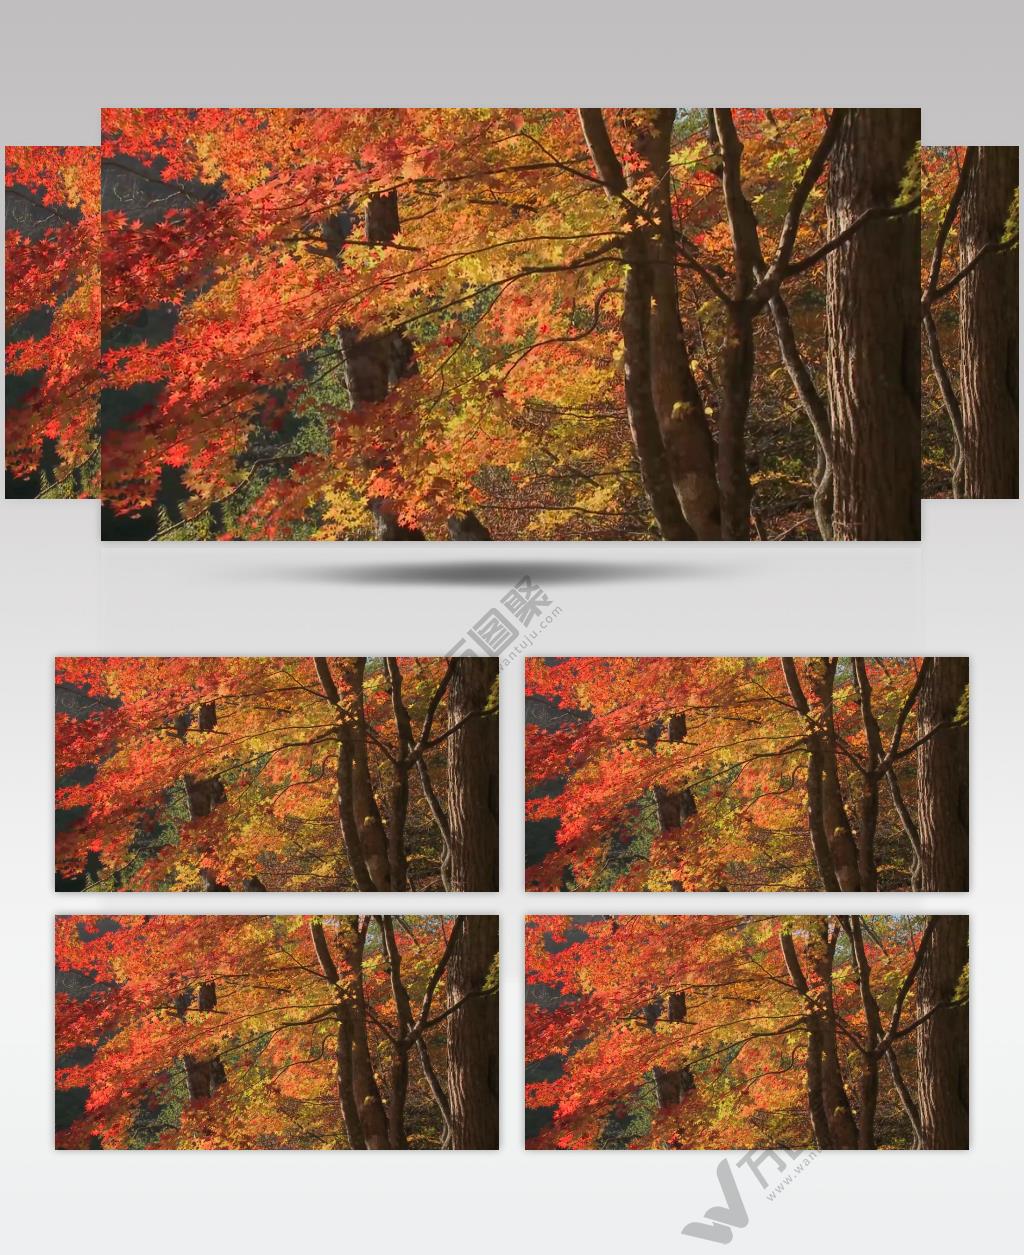 树林树木秋天风景 AM053-2植物 视频下载